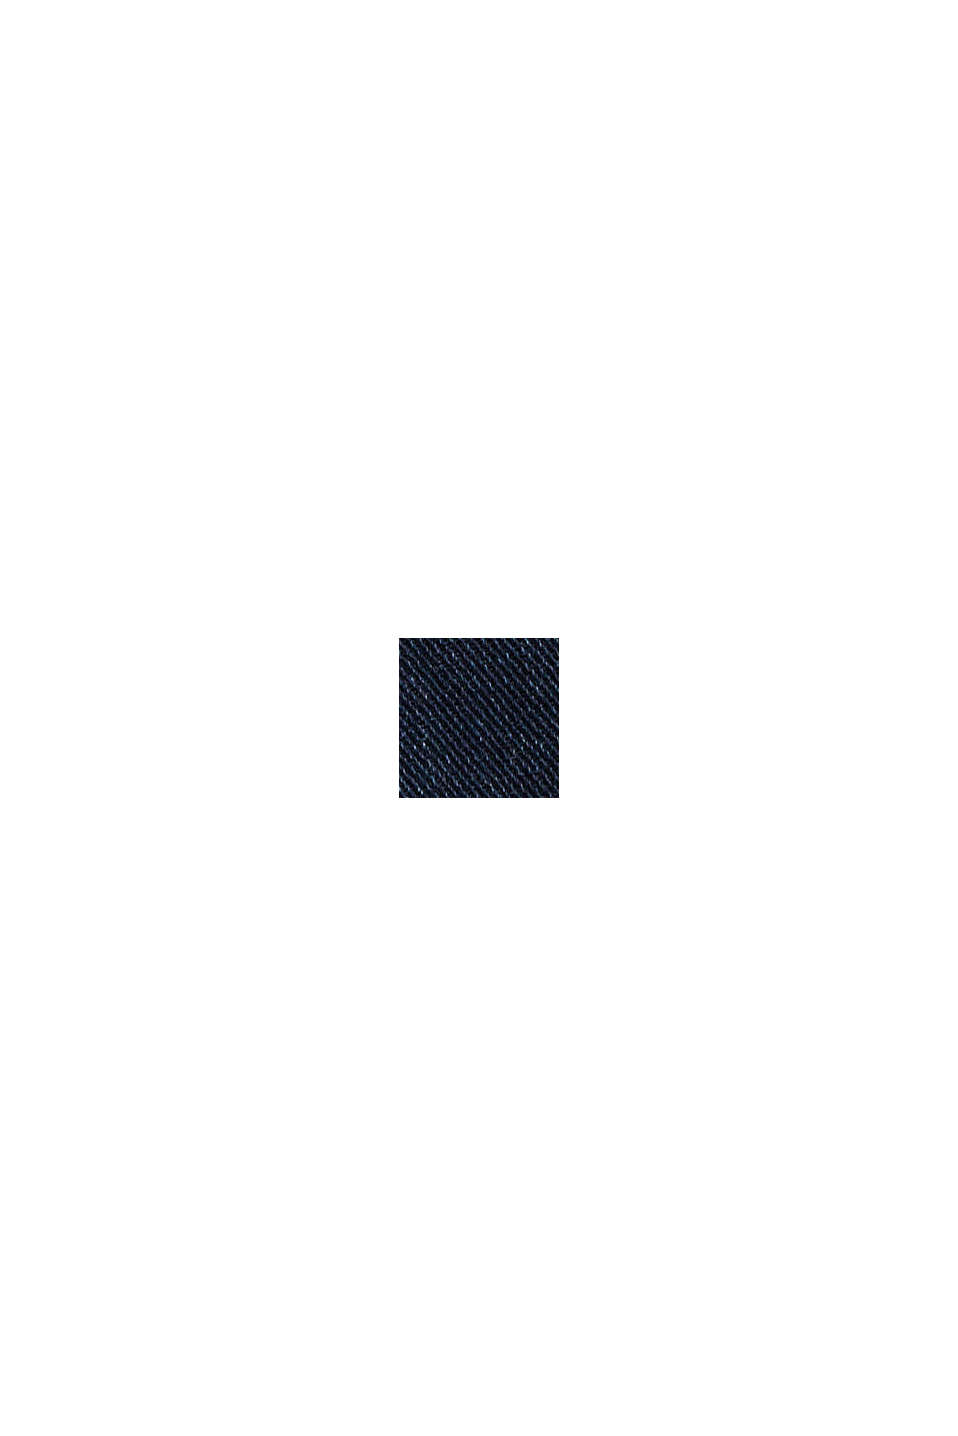 Dżinsy ze streczem z bawełny organicznej, BLUE BLACK, swatch